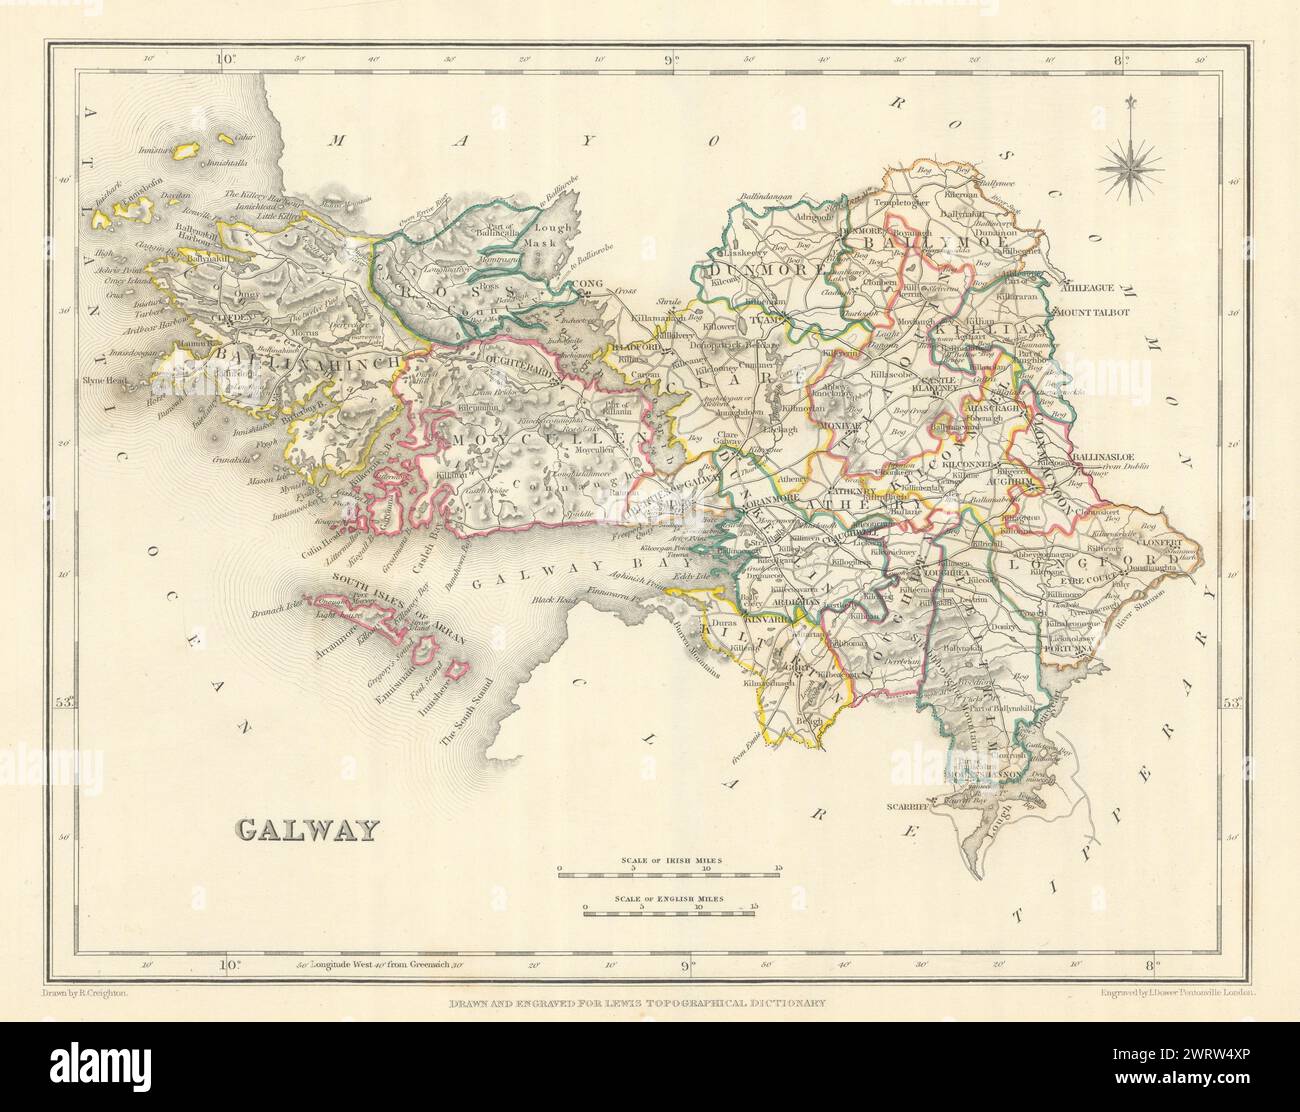 Mappa antica DELLA CONTEA DI GALWAY per LEWIS di CREIGHTON & DOWER. Irlanda 1850 anni Foto Stock